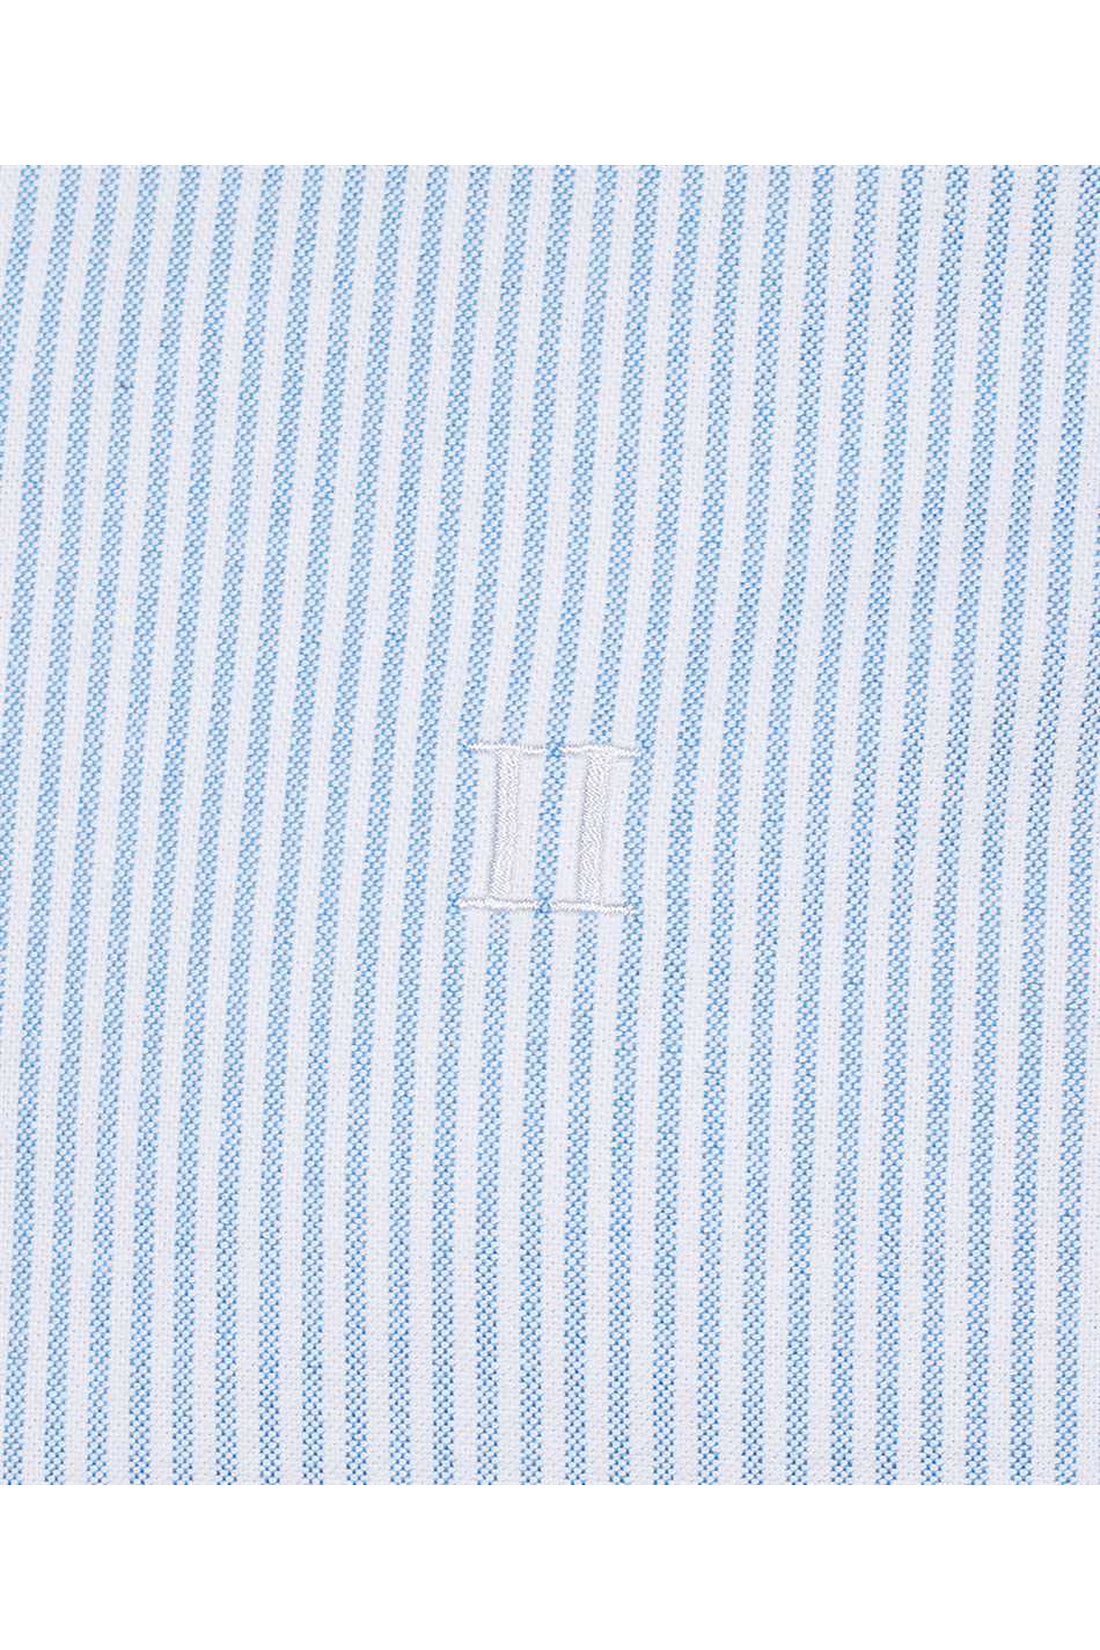 Les Deux-OUTLET-SALE-Kristian button-down collar cotton shirt-ARCHIVIST